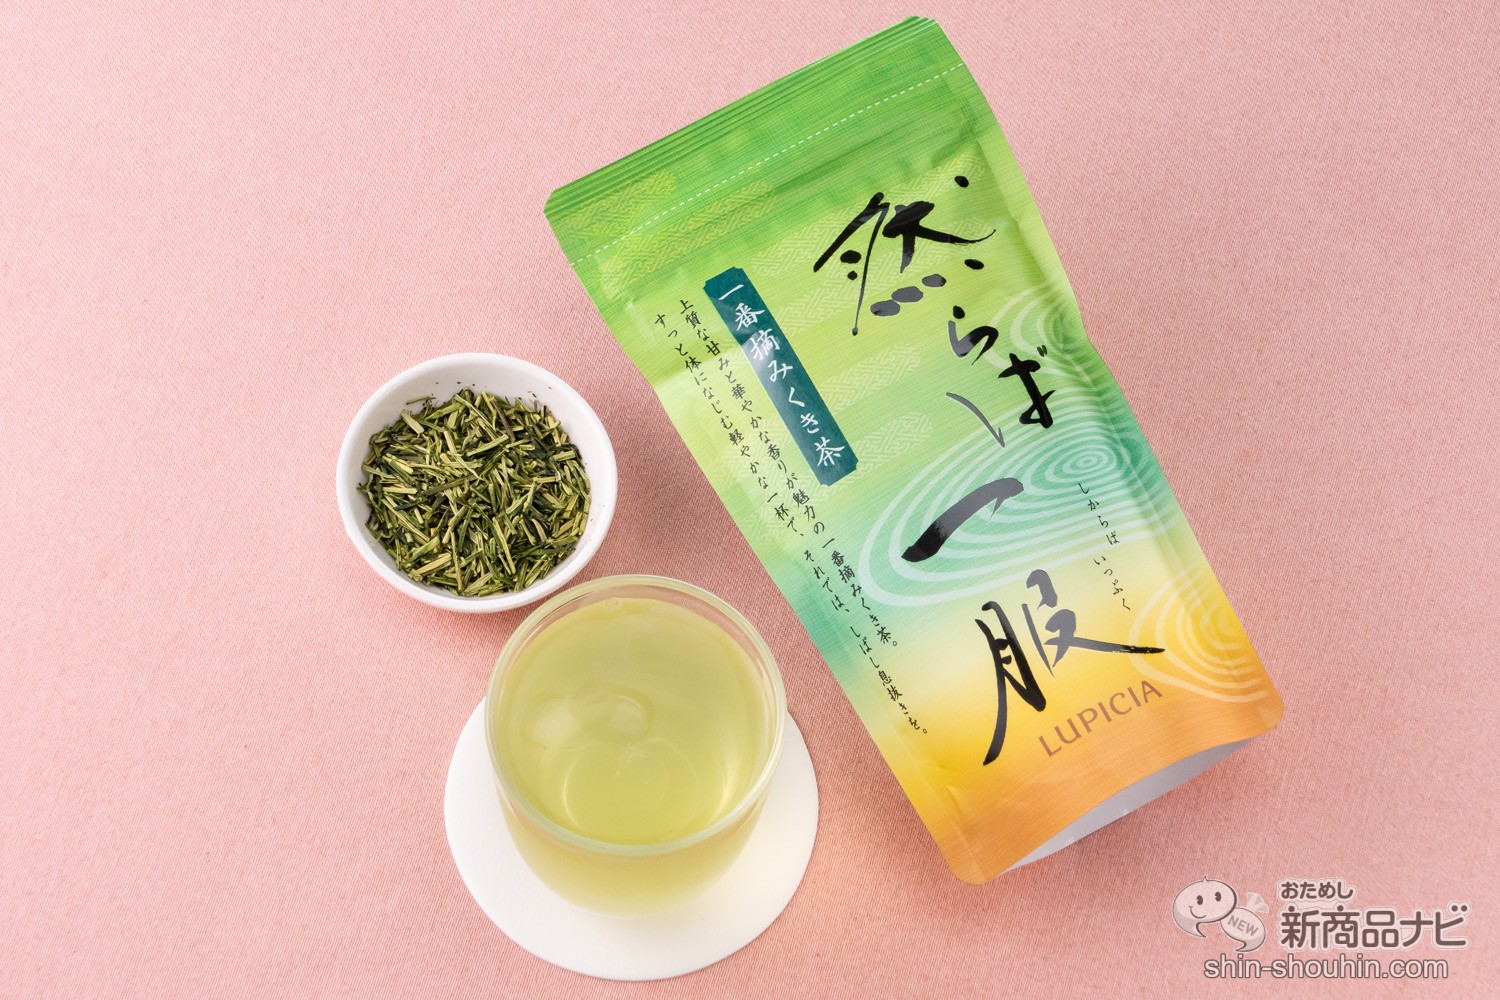 おためし新商品ナビ » Blog Archive » 【新発売】ルピシアの「毎日の日本茶」シリーズから新登場！ さらに期間限定でキャンペーン実施中！